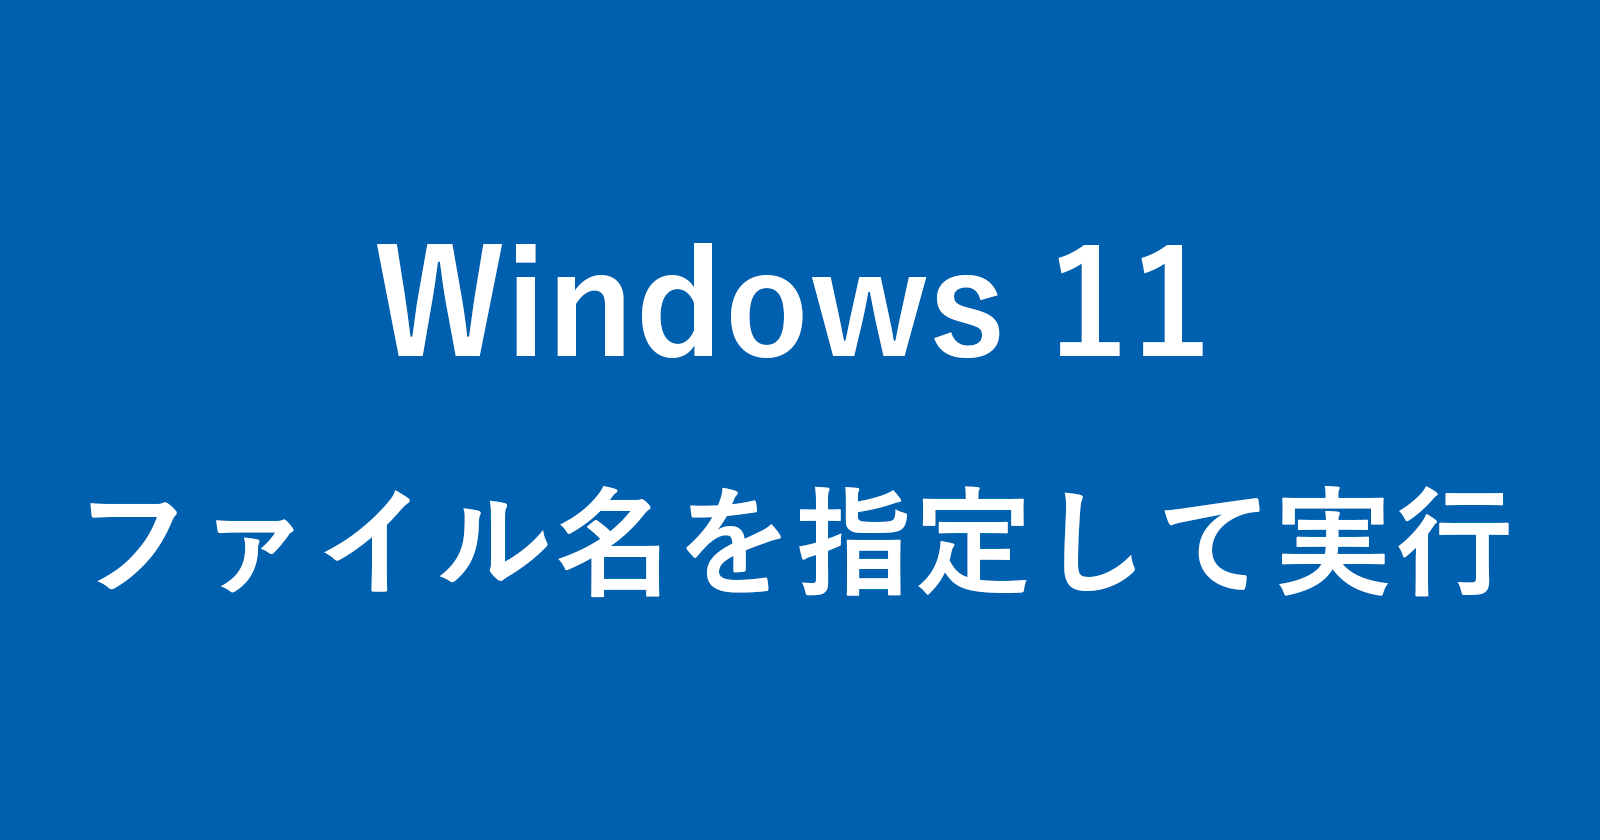 windows 11 open run